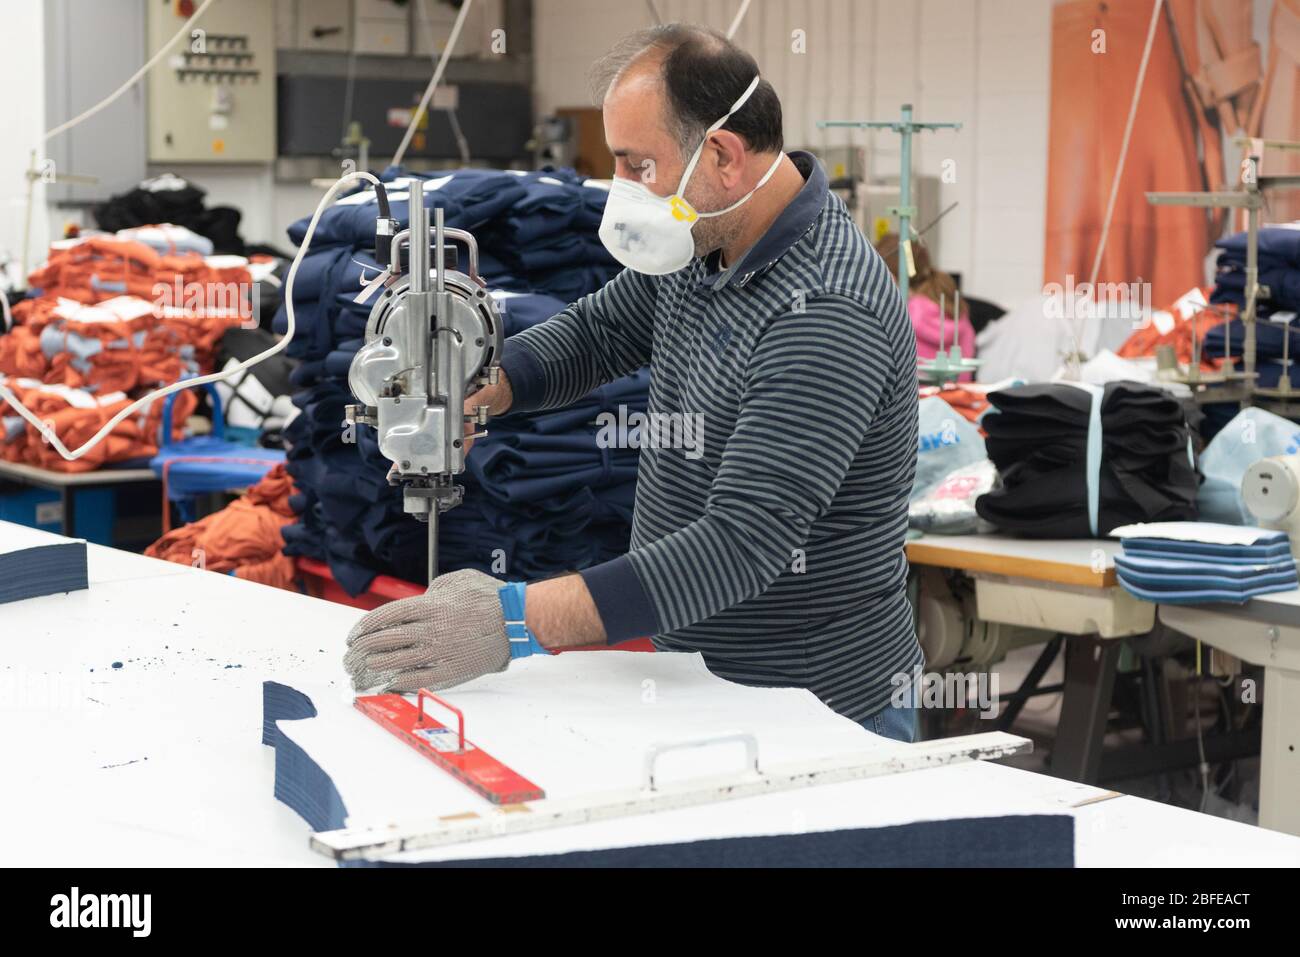 Un operaio di fabbrica taglia l'abbigliamento medico per il NHS (Servizio sanitario Nazionale) alla fabbrica di Fashion-Enter Ltd. Foto Stock